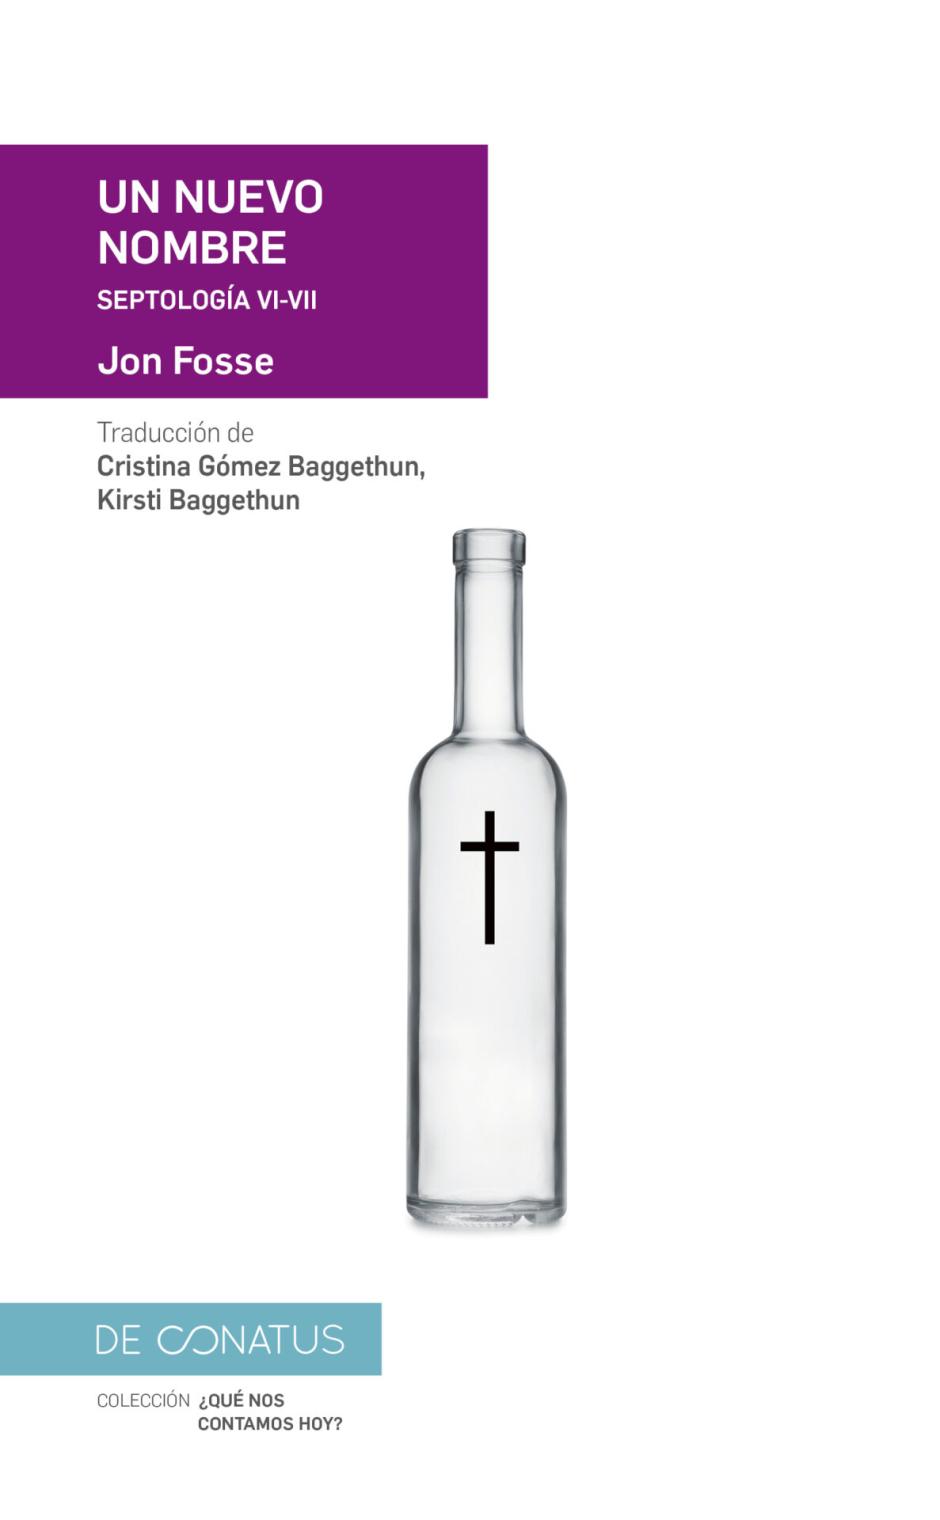 'Un nuevo hombre' es parte de la 'Septología' de Jon Fosse, publicada en España por la editorial De Conatus